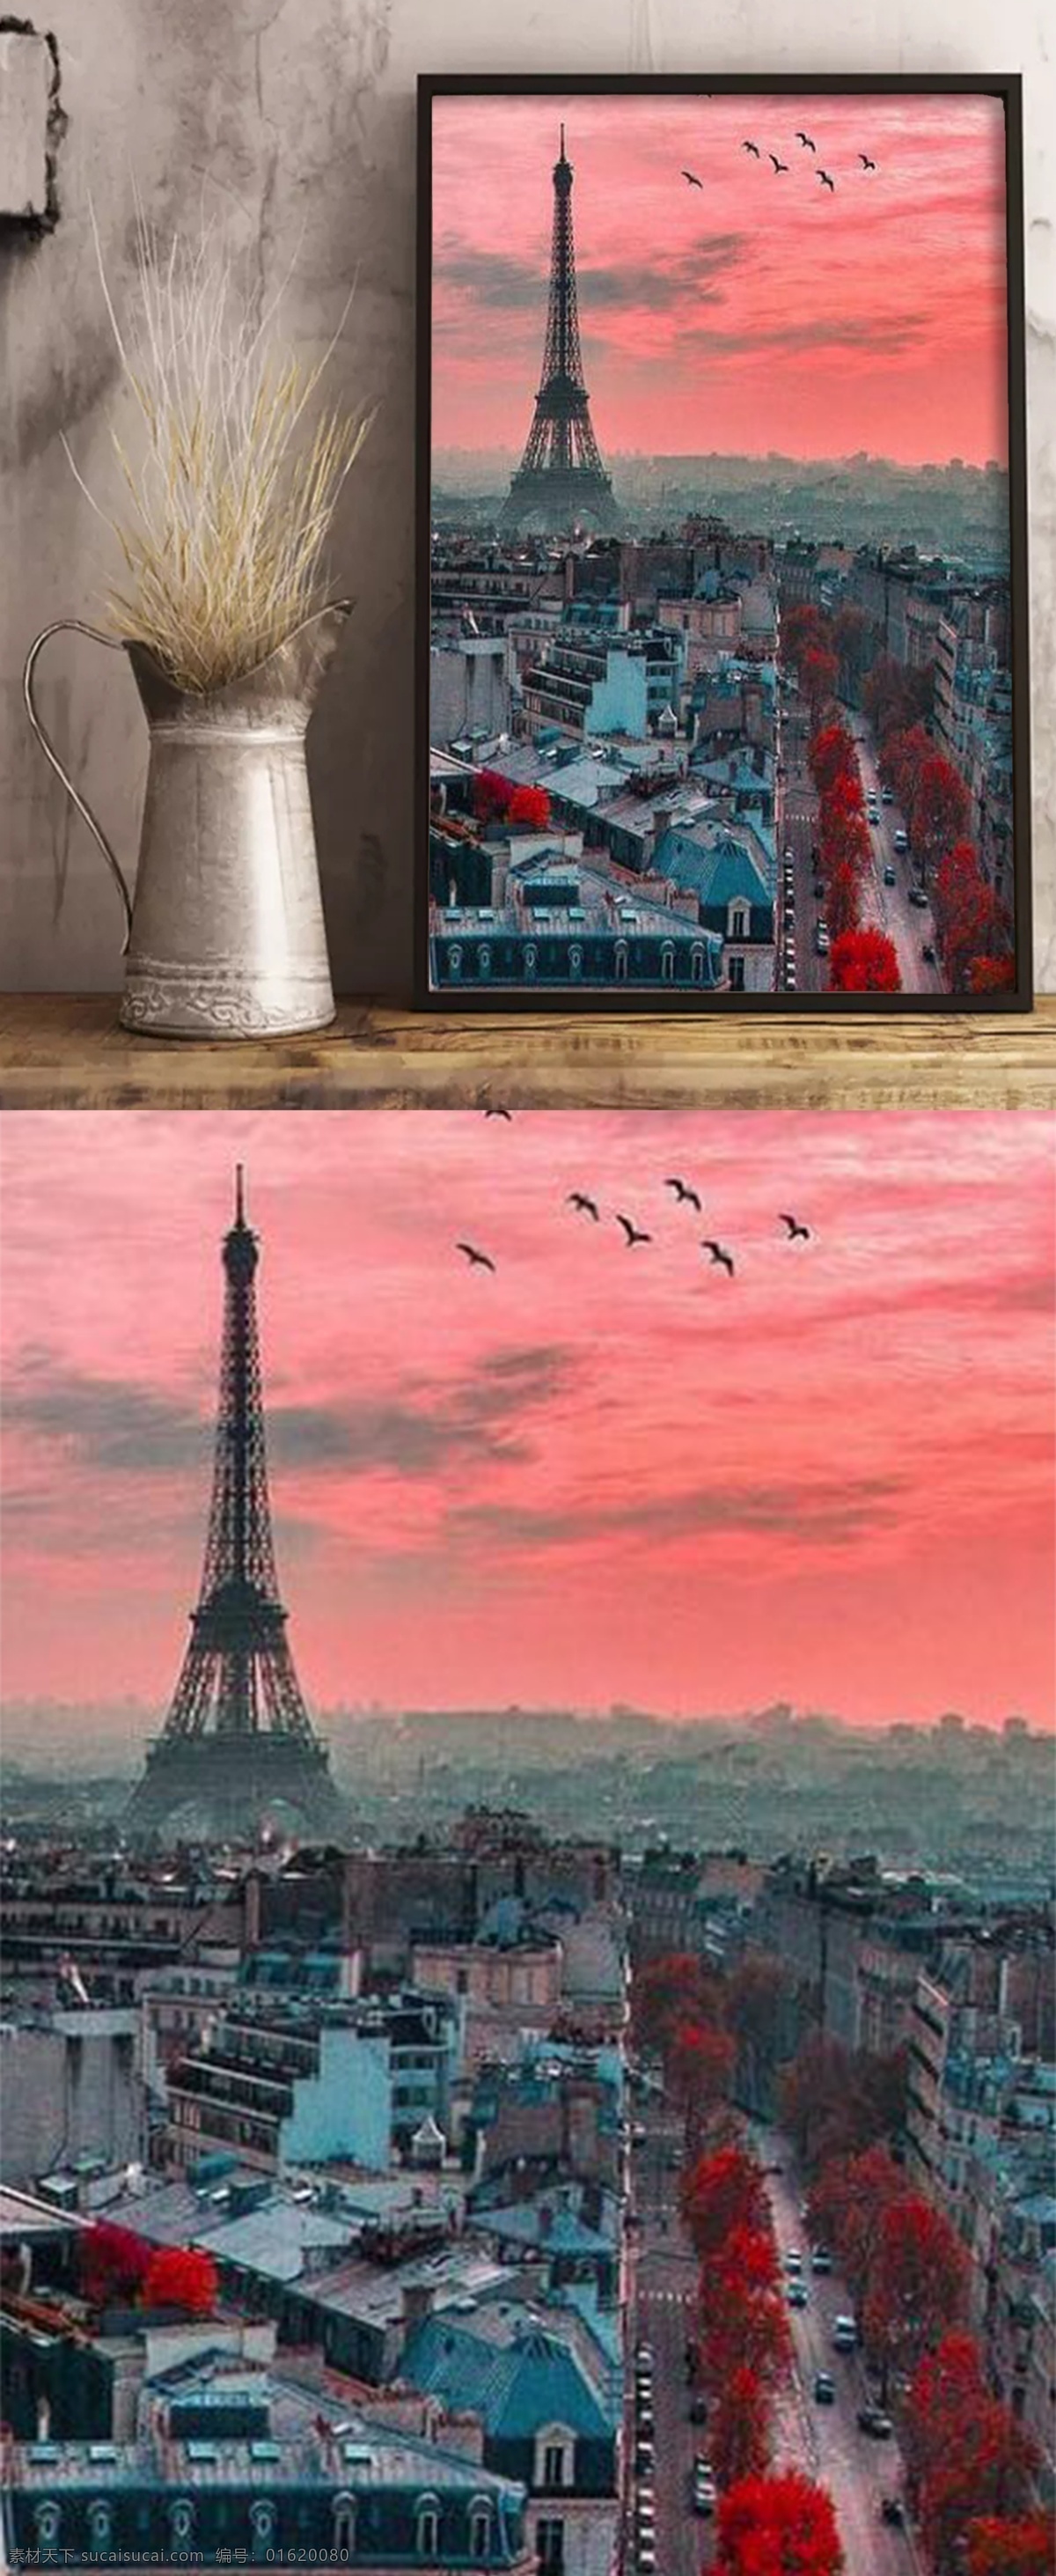 古典 风 装饰 埃菲尔铁塔 装饰画 风景 巴黎 傍晚 彩霞 飞鸟 红树